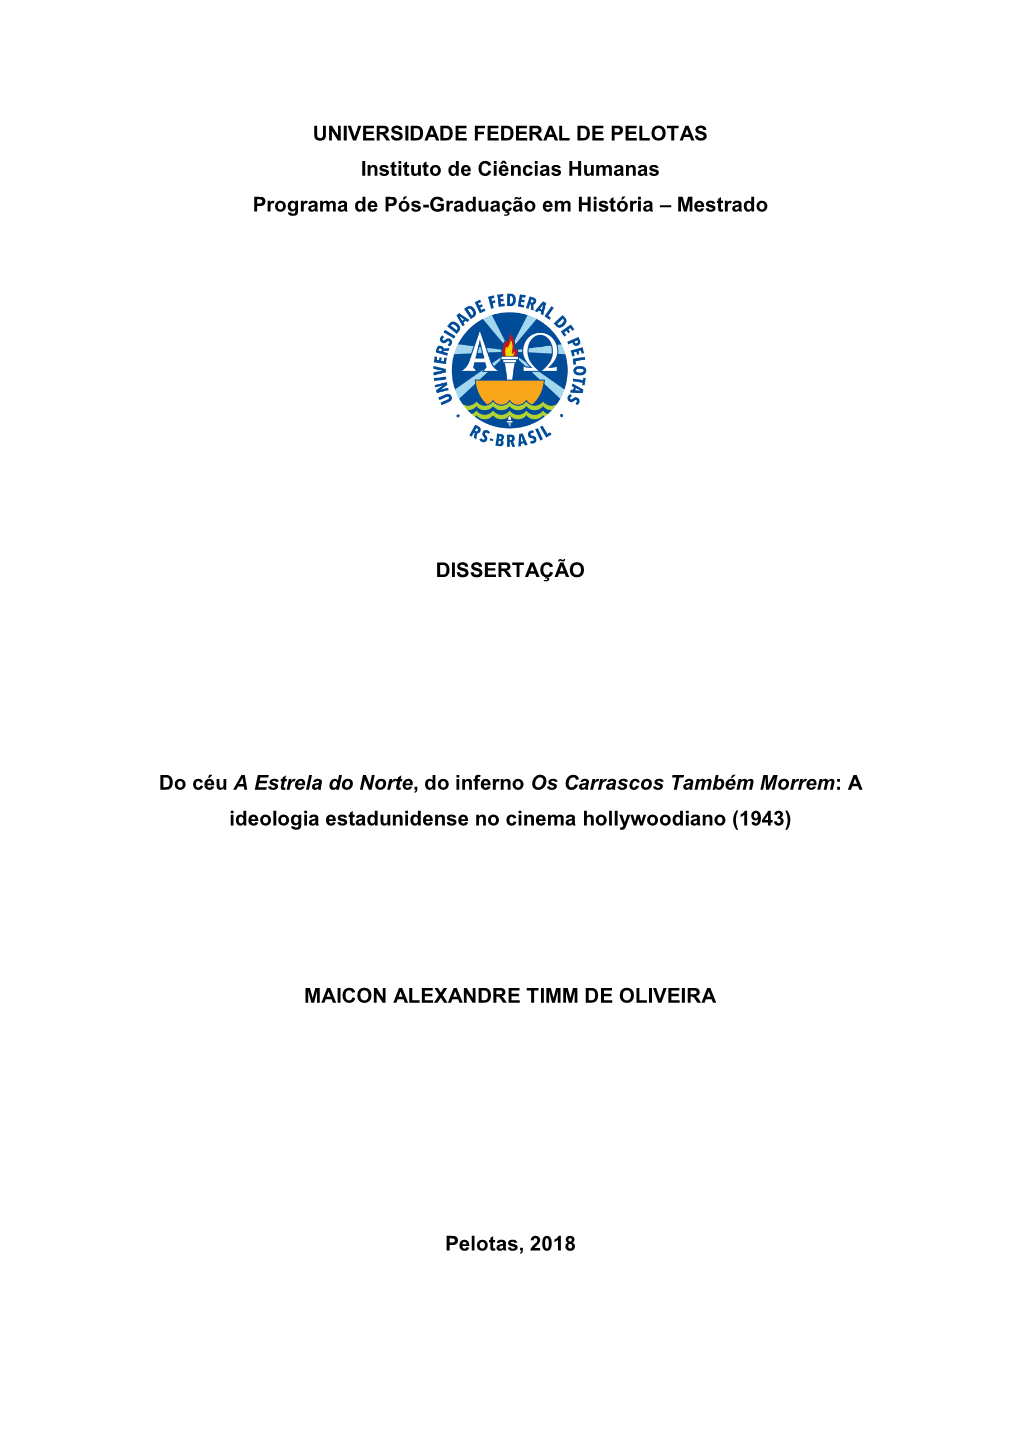 Dissertação Maicon Alexandre Timm De Oliveira.Pdf